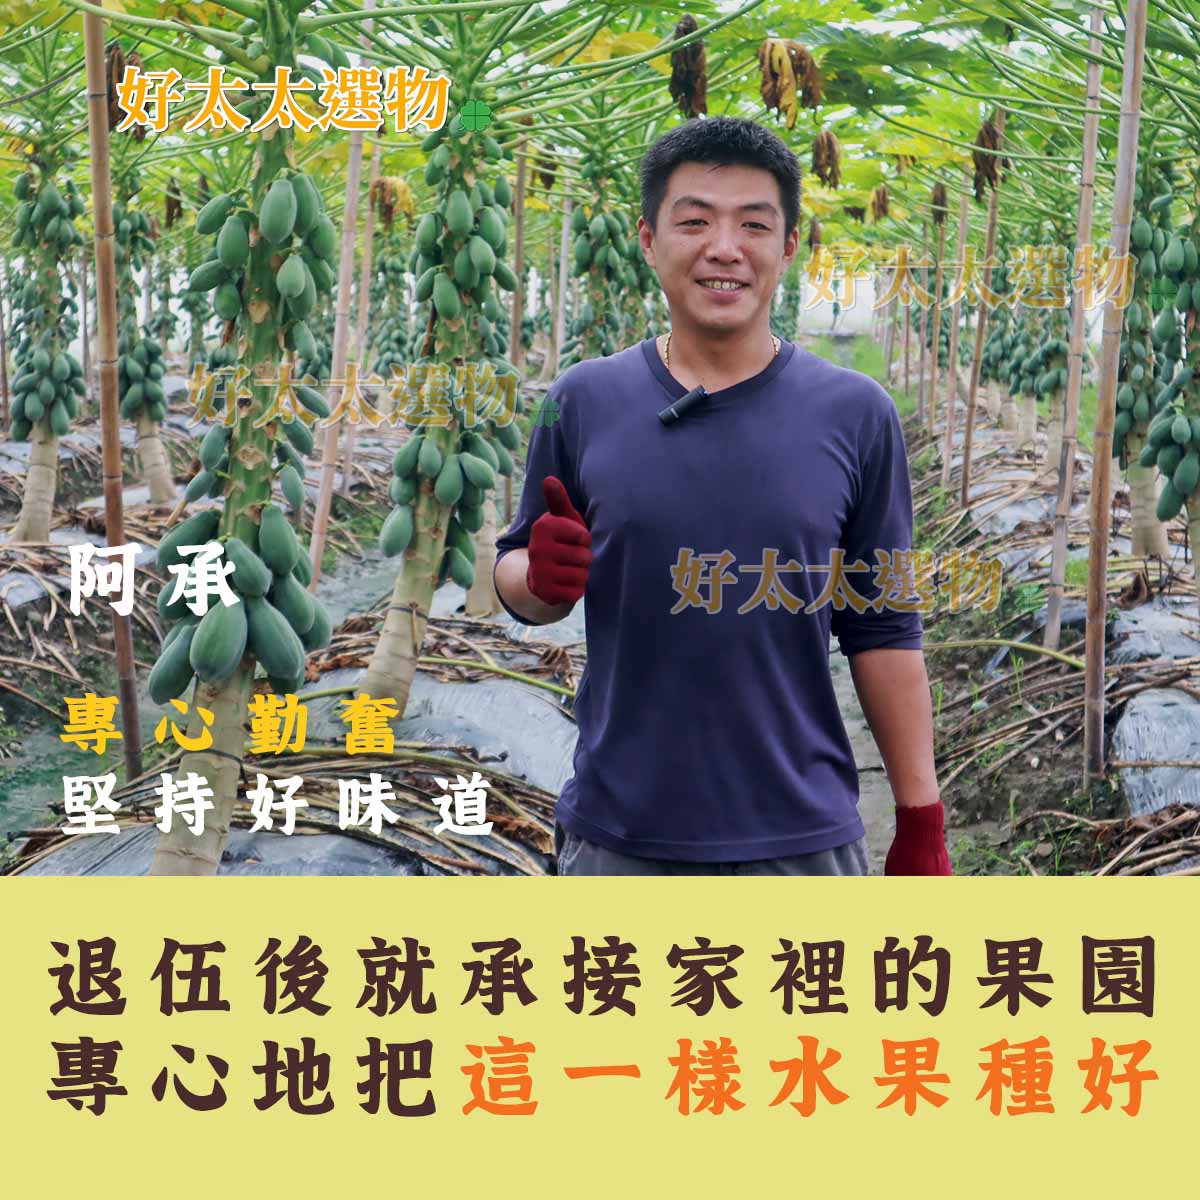 阿承是林內種植日昇木瓜的專業戶